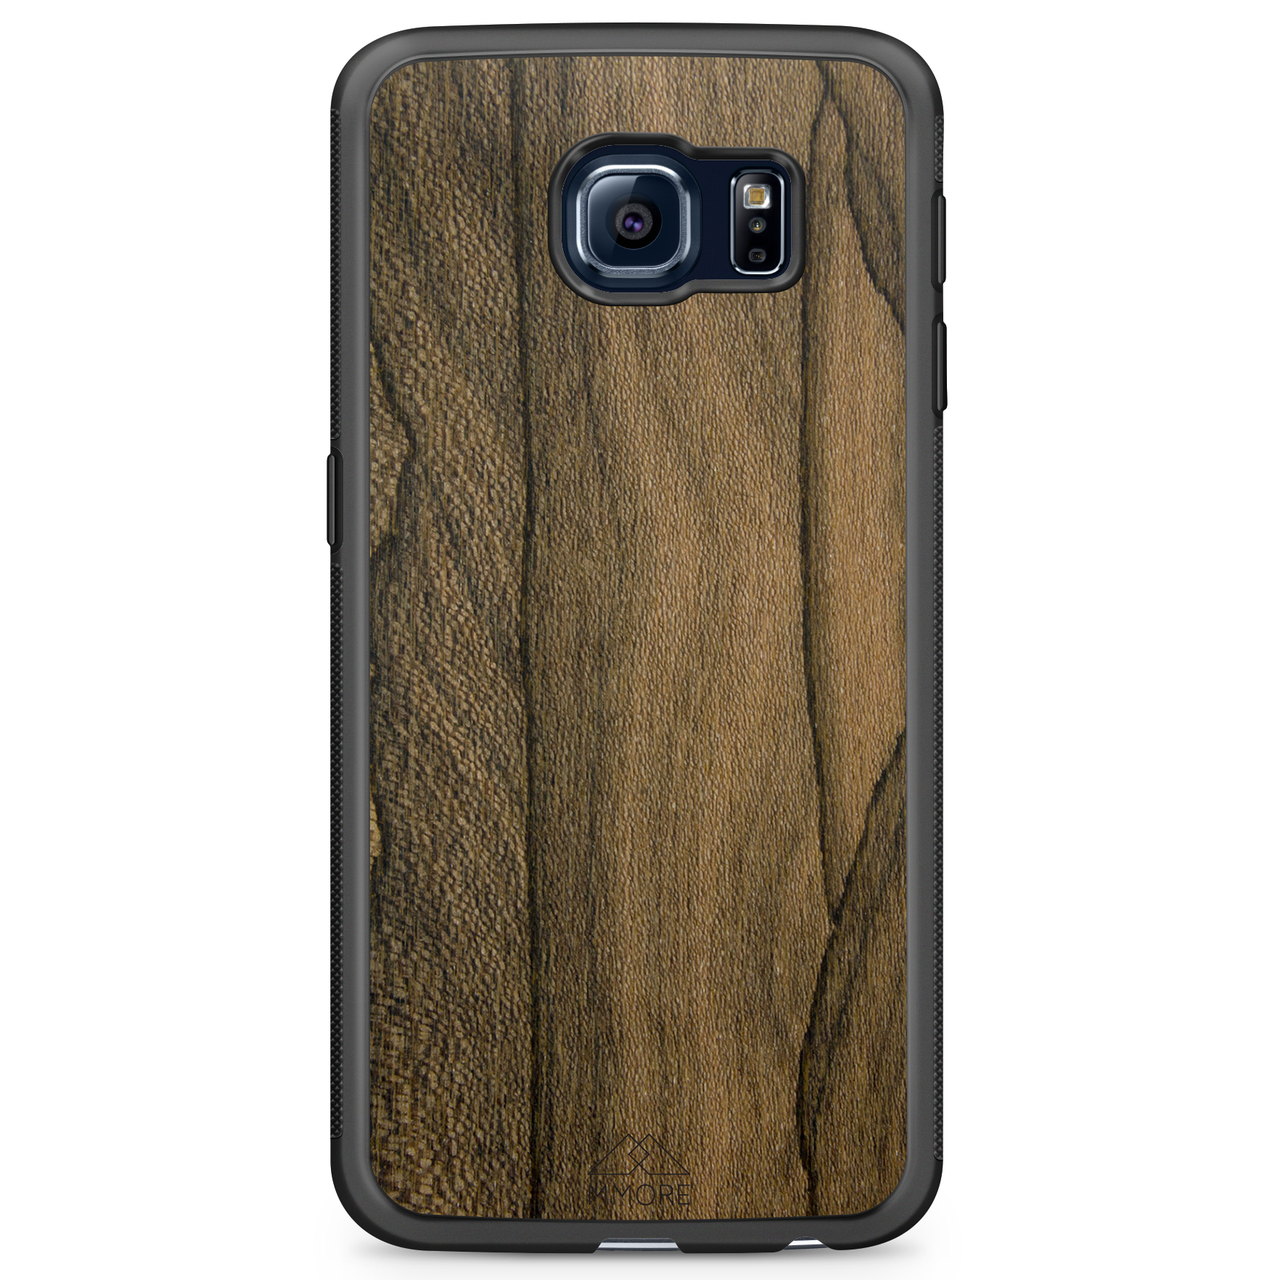 Custodia per telefono Samsung S6 Edge in legno Ziricote